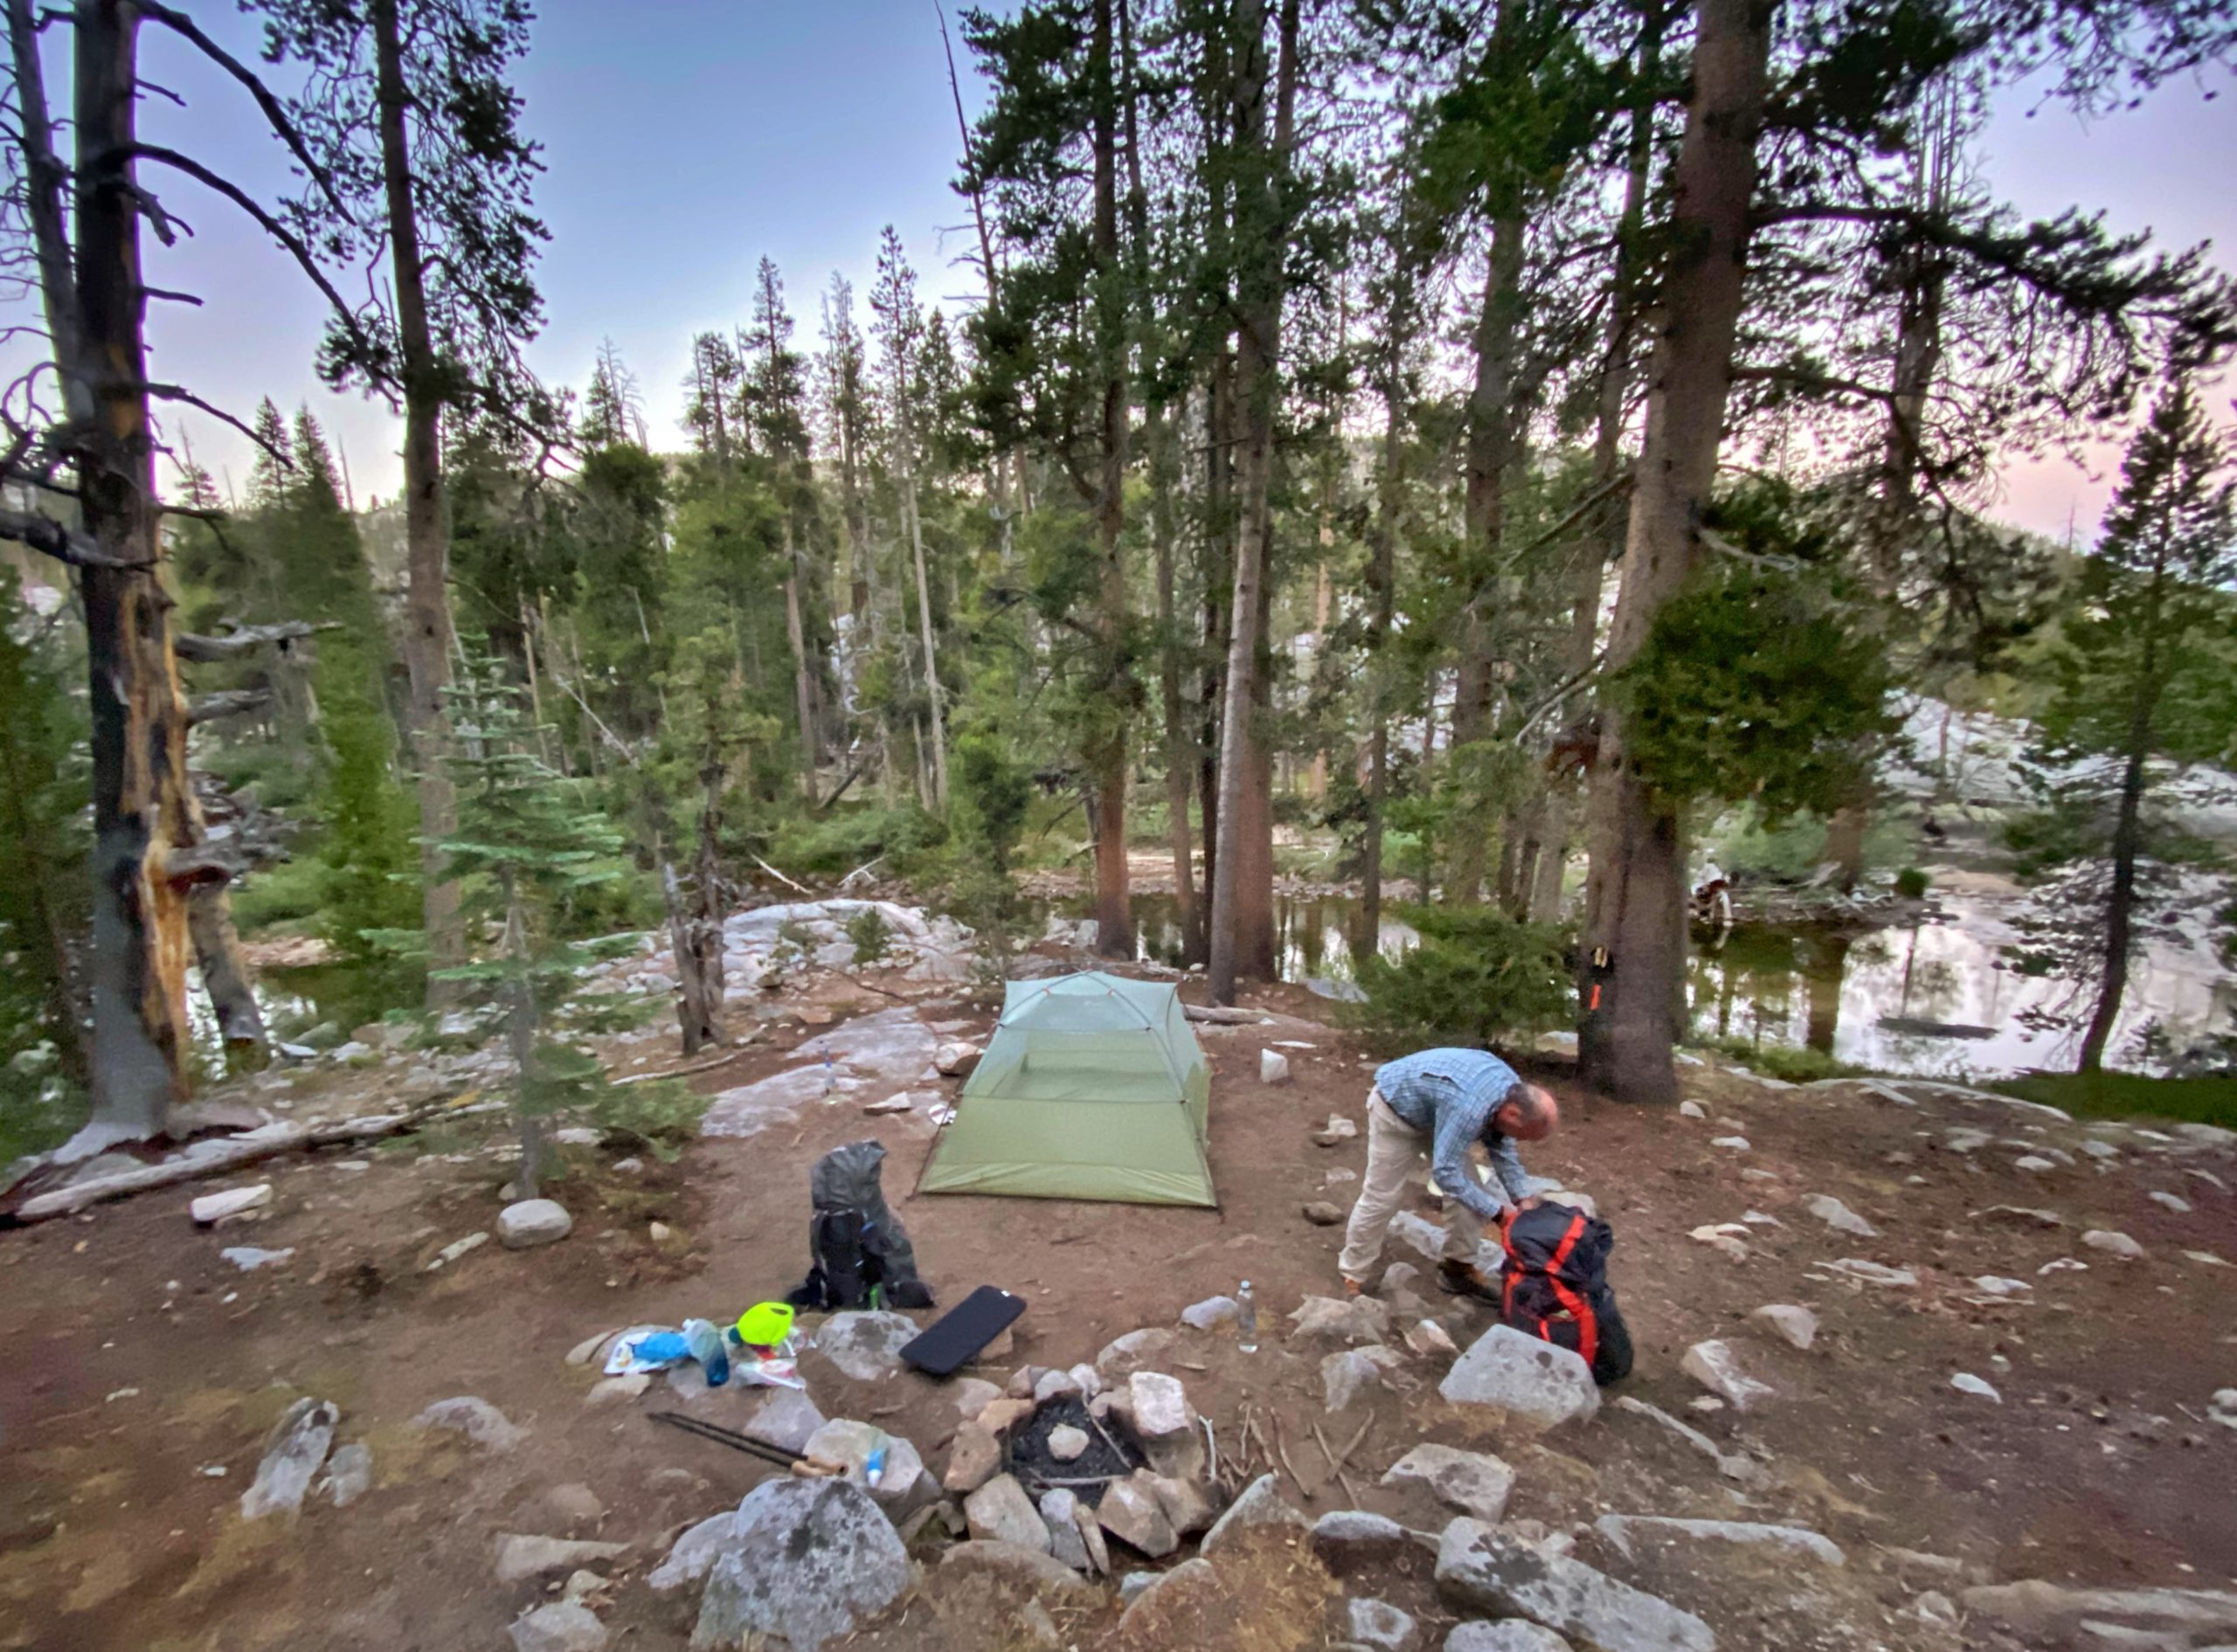 Camp site at Bear Creek